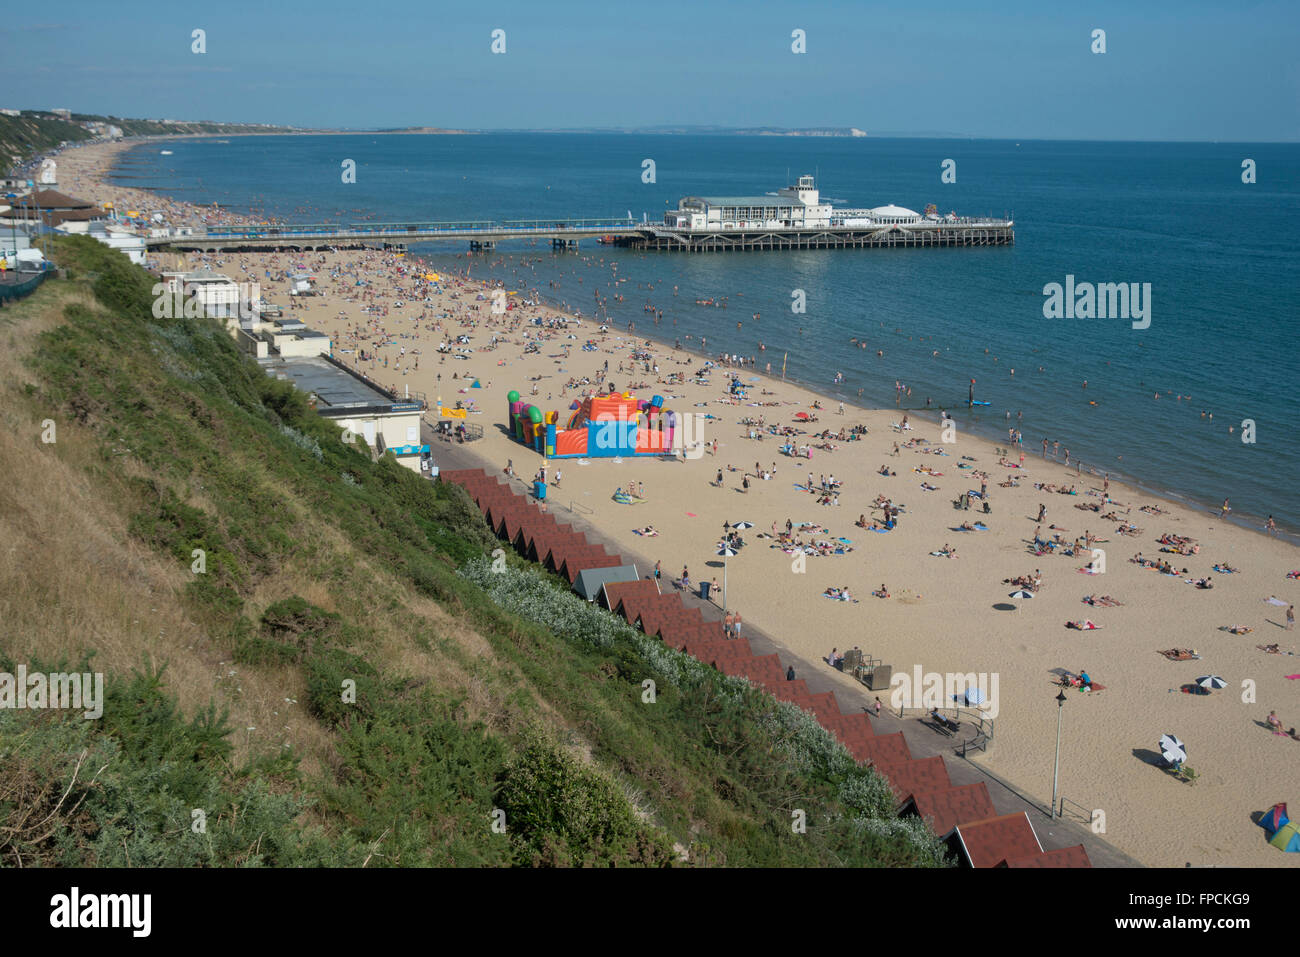 Una vista desde arriba de la playa llena de gente, el malecón puede ser visto en la distancia. Foto de stock